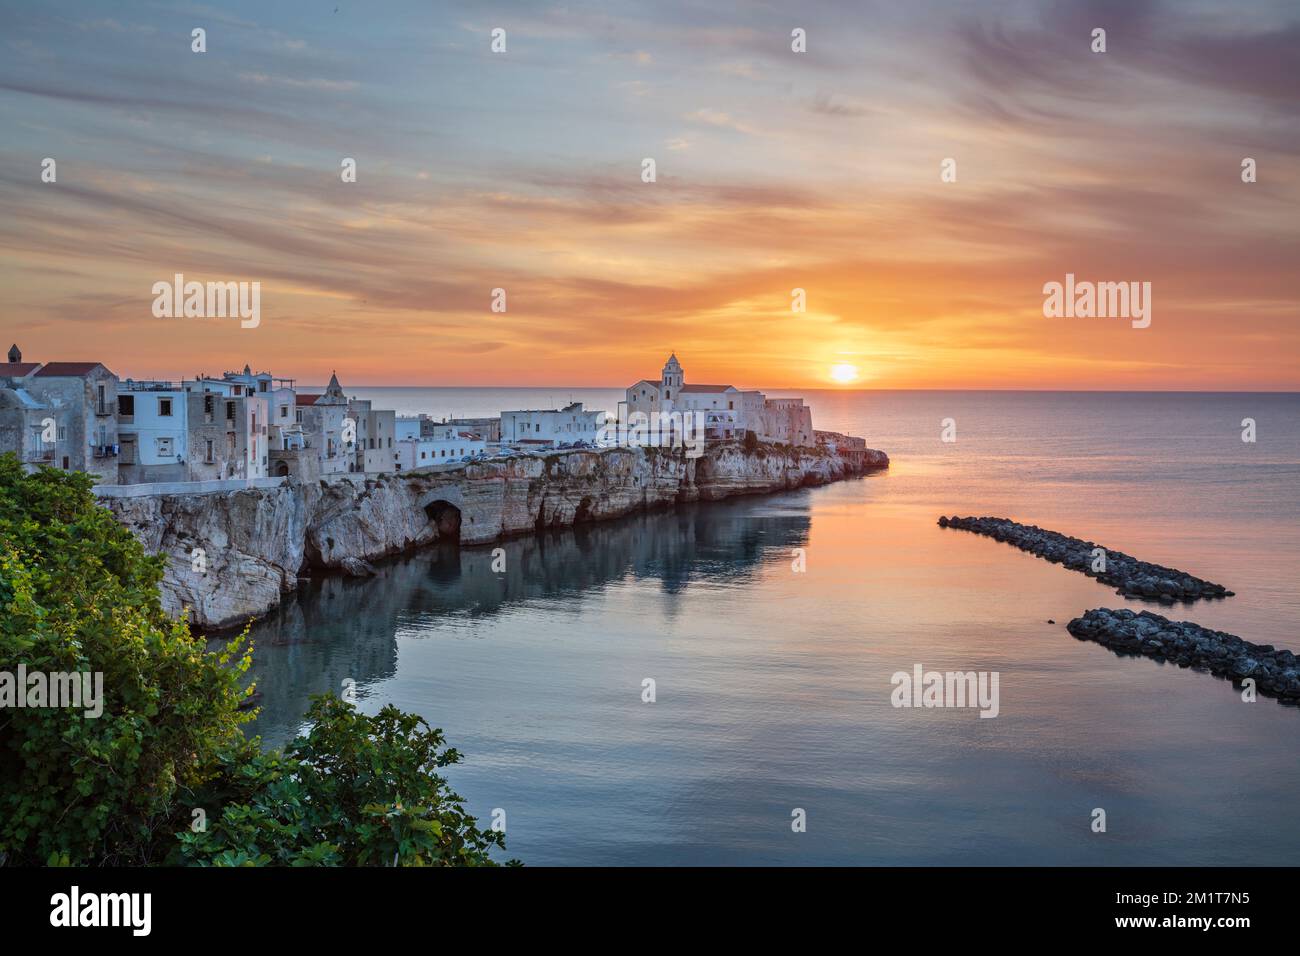 La vieille ville sur le promontoire au lever du soleil, Vieste, péninsule de Gargano, province de Foggia, Puglia, Italie, Europe Banque D'Images